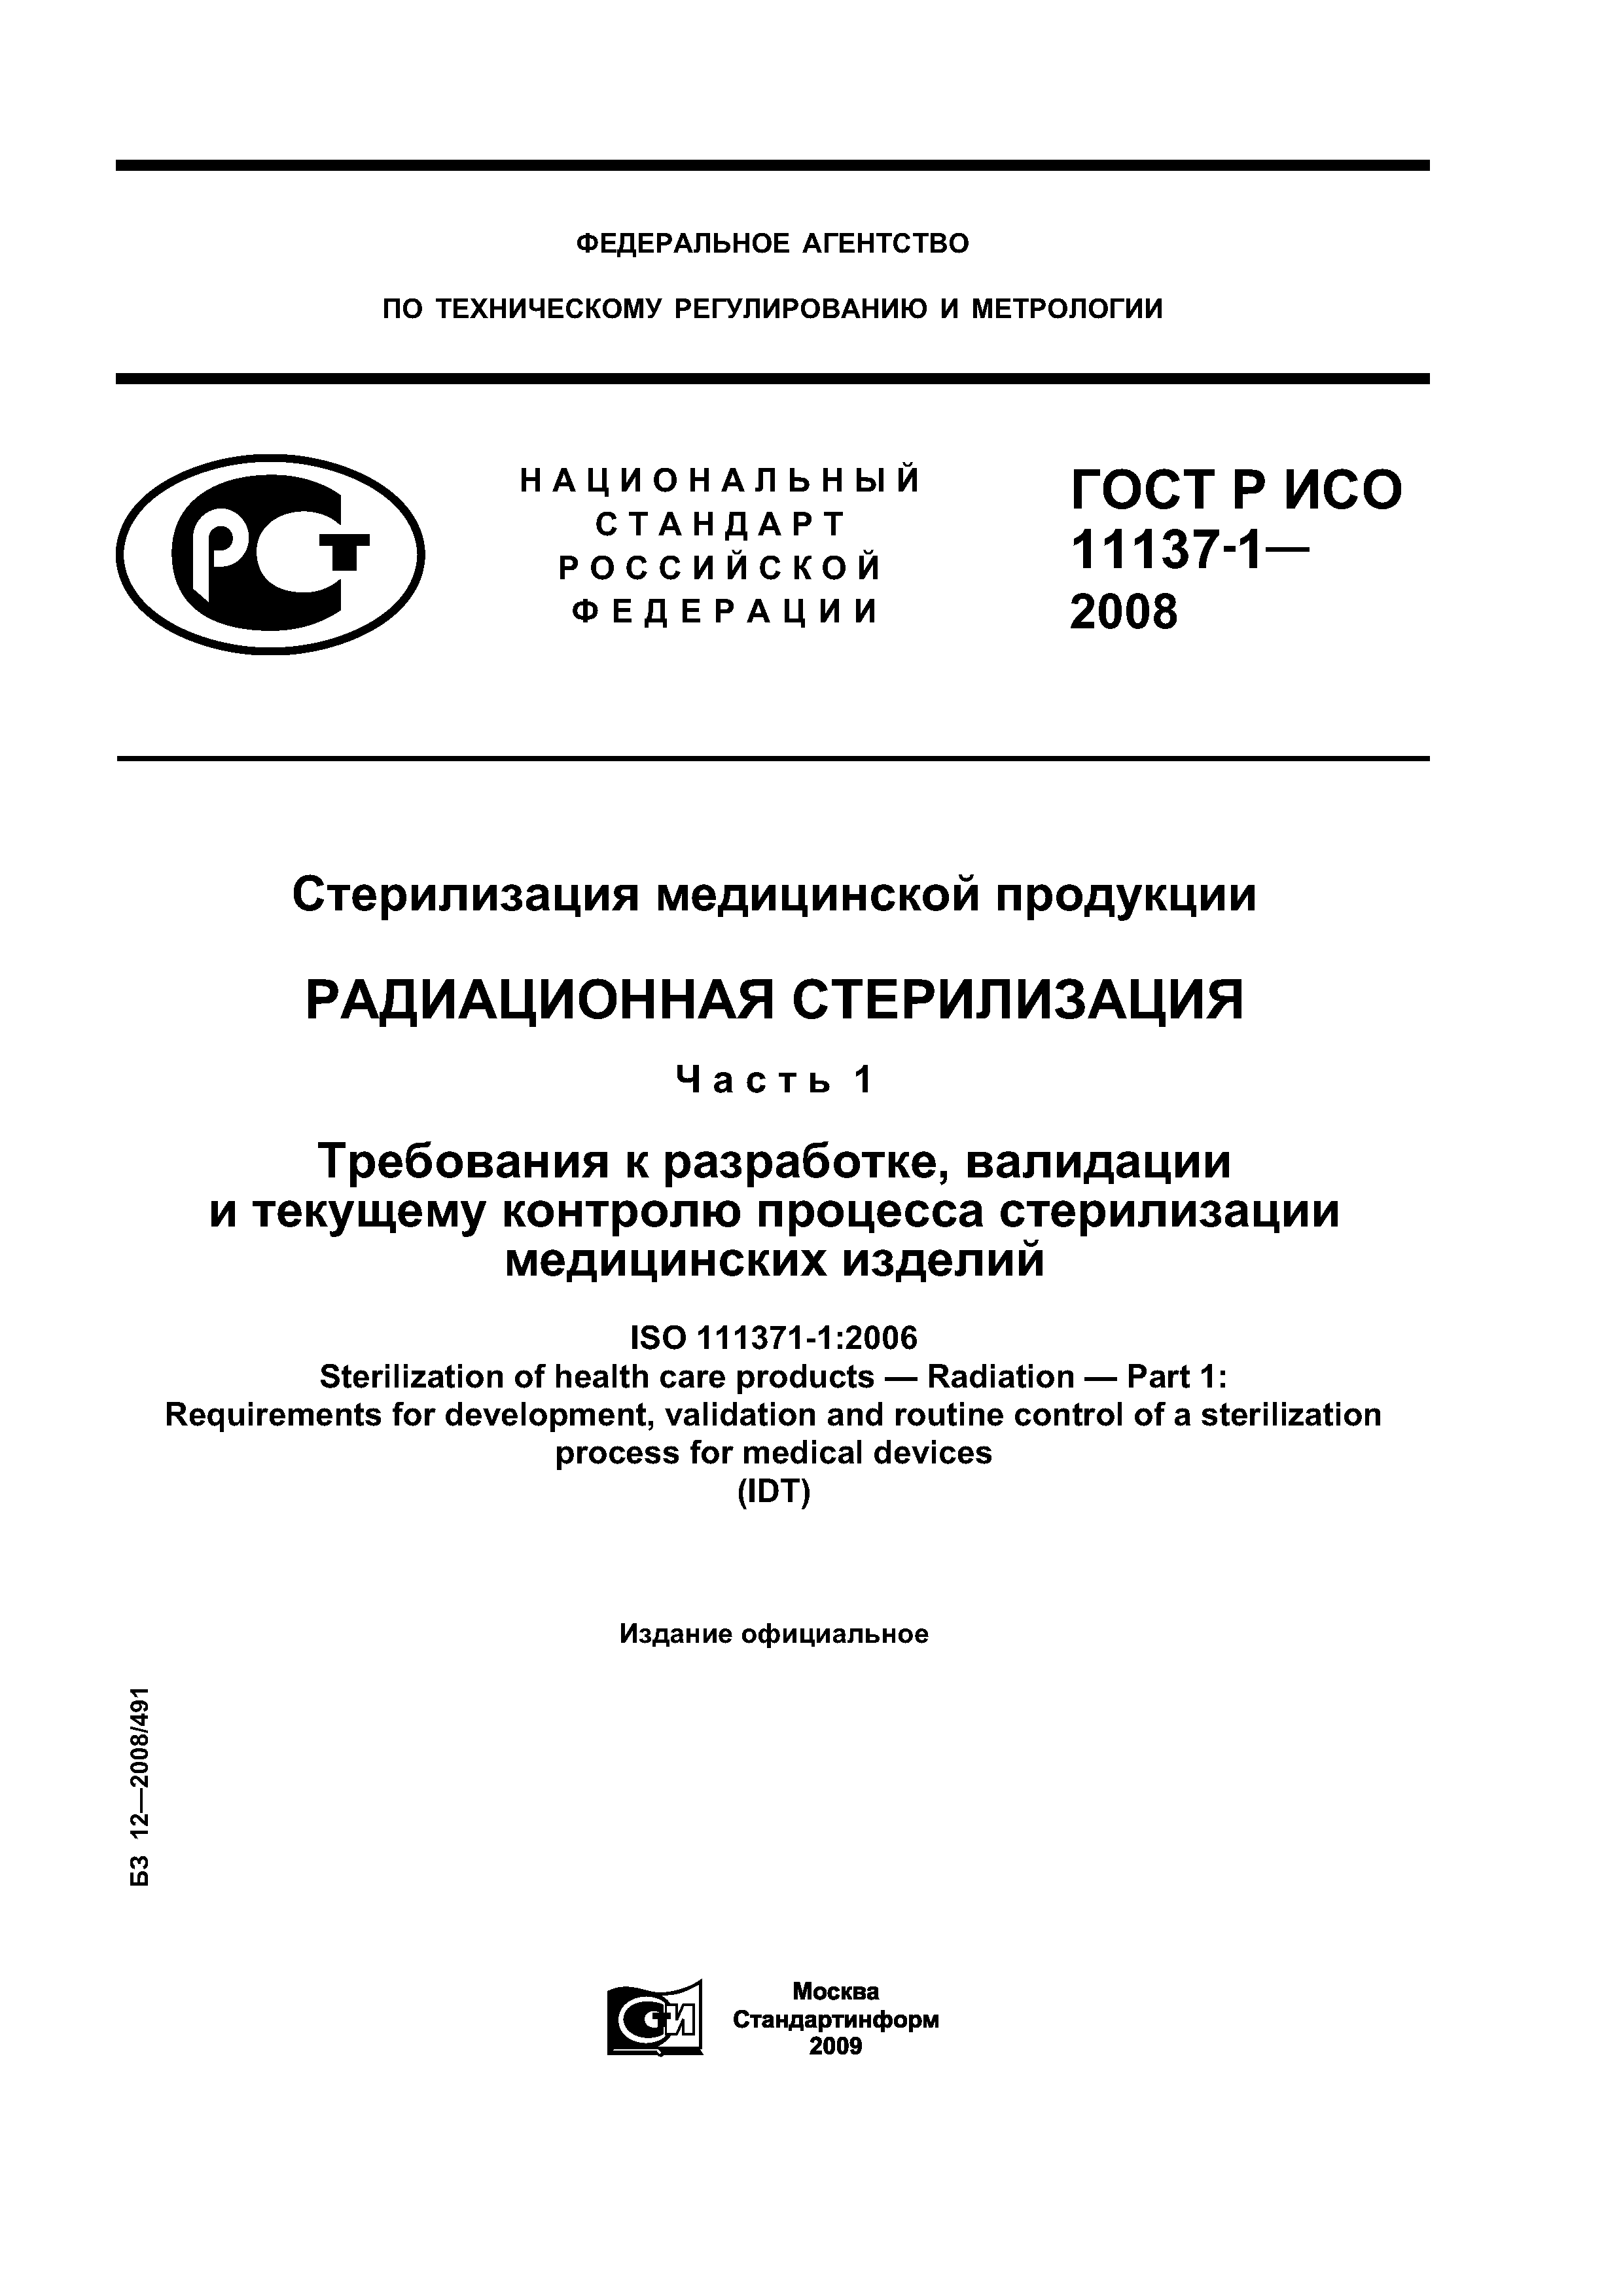 ГОСТ Р ИСО 11137-1-2008